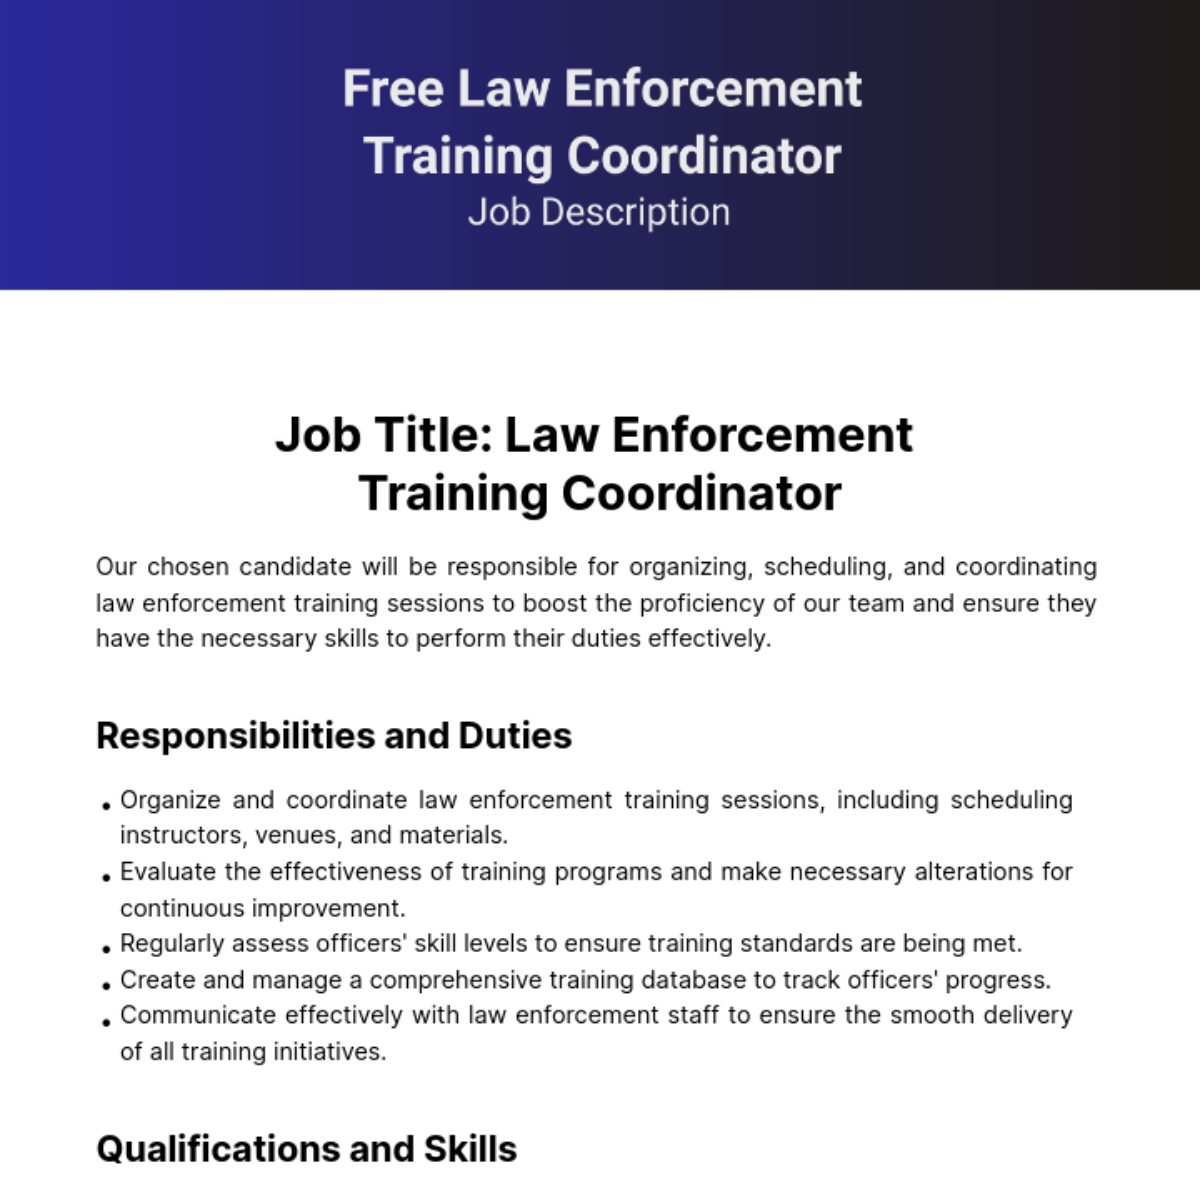 Free Law Enforcement Training Coordinator Job Description Template